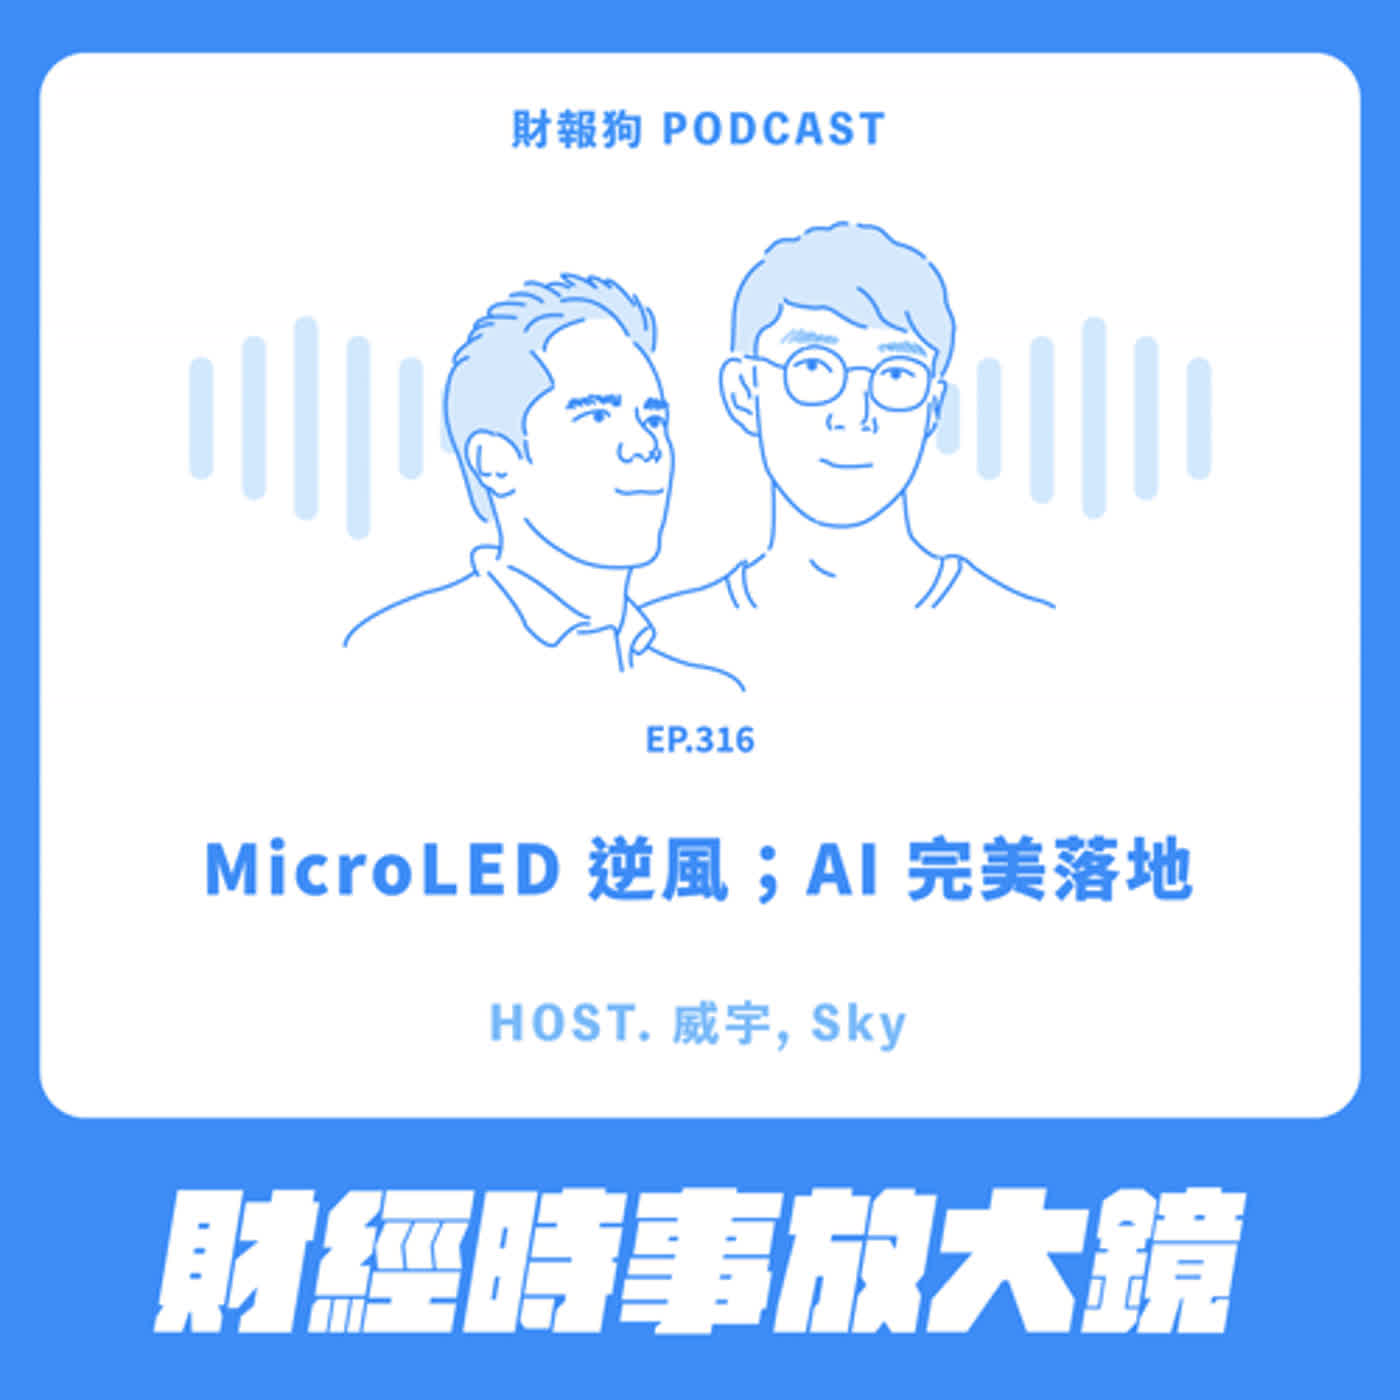 316.【財經時事放大鏡】MicroLED 逆風；AI 完美落地